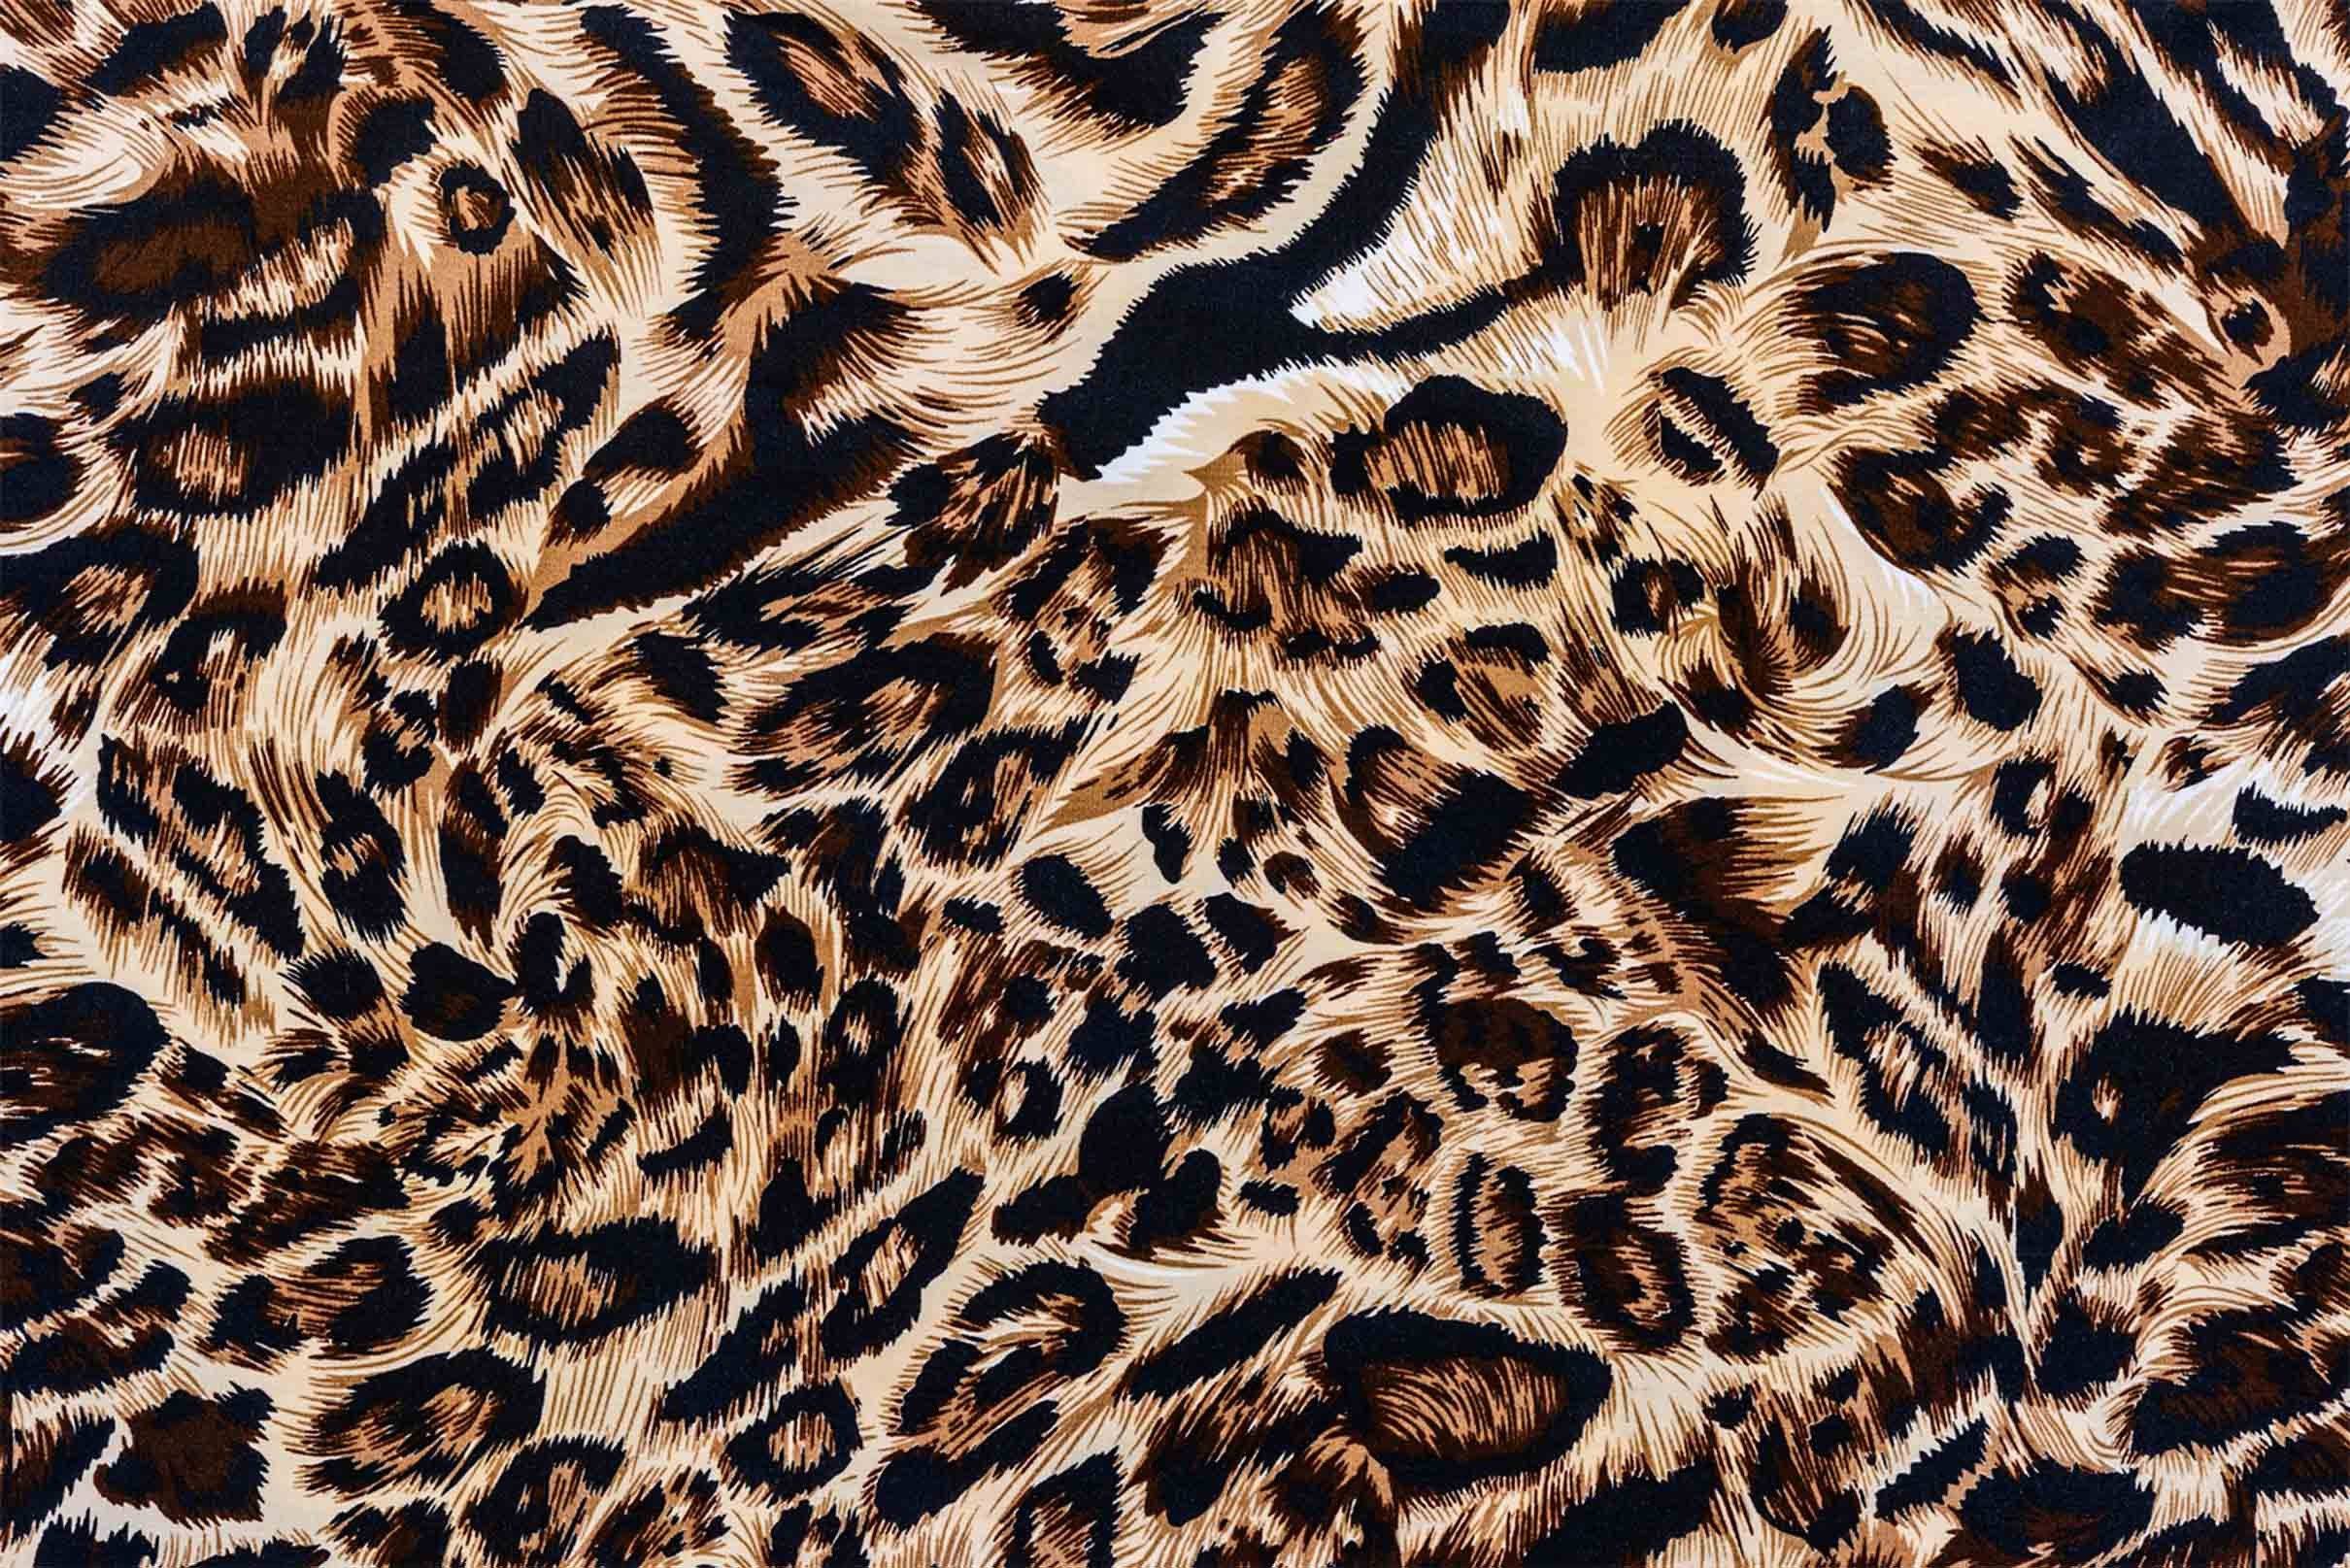 3D Leopard Pattern 22 Kitchen Mat Floor Mural Wallpaper AJ Wallpaper 